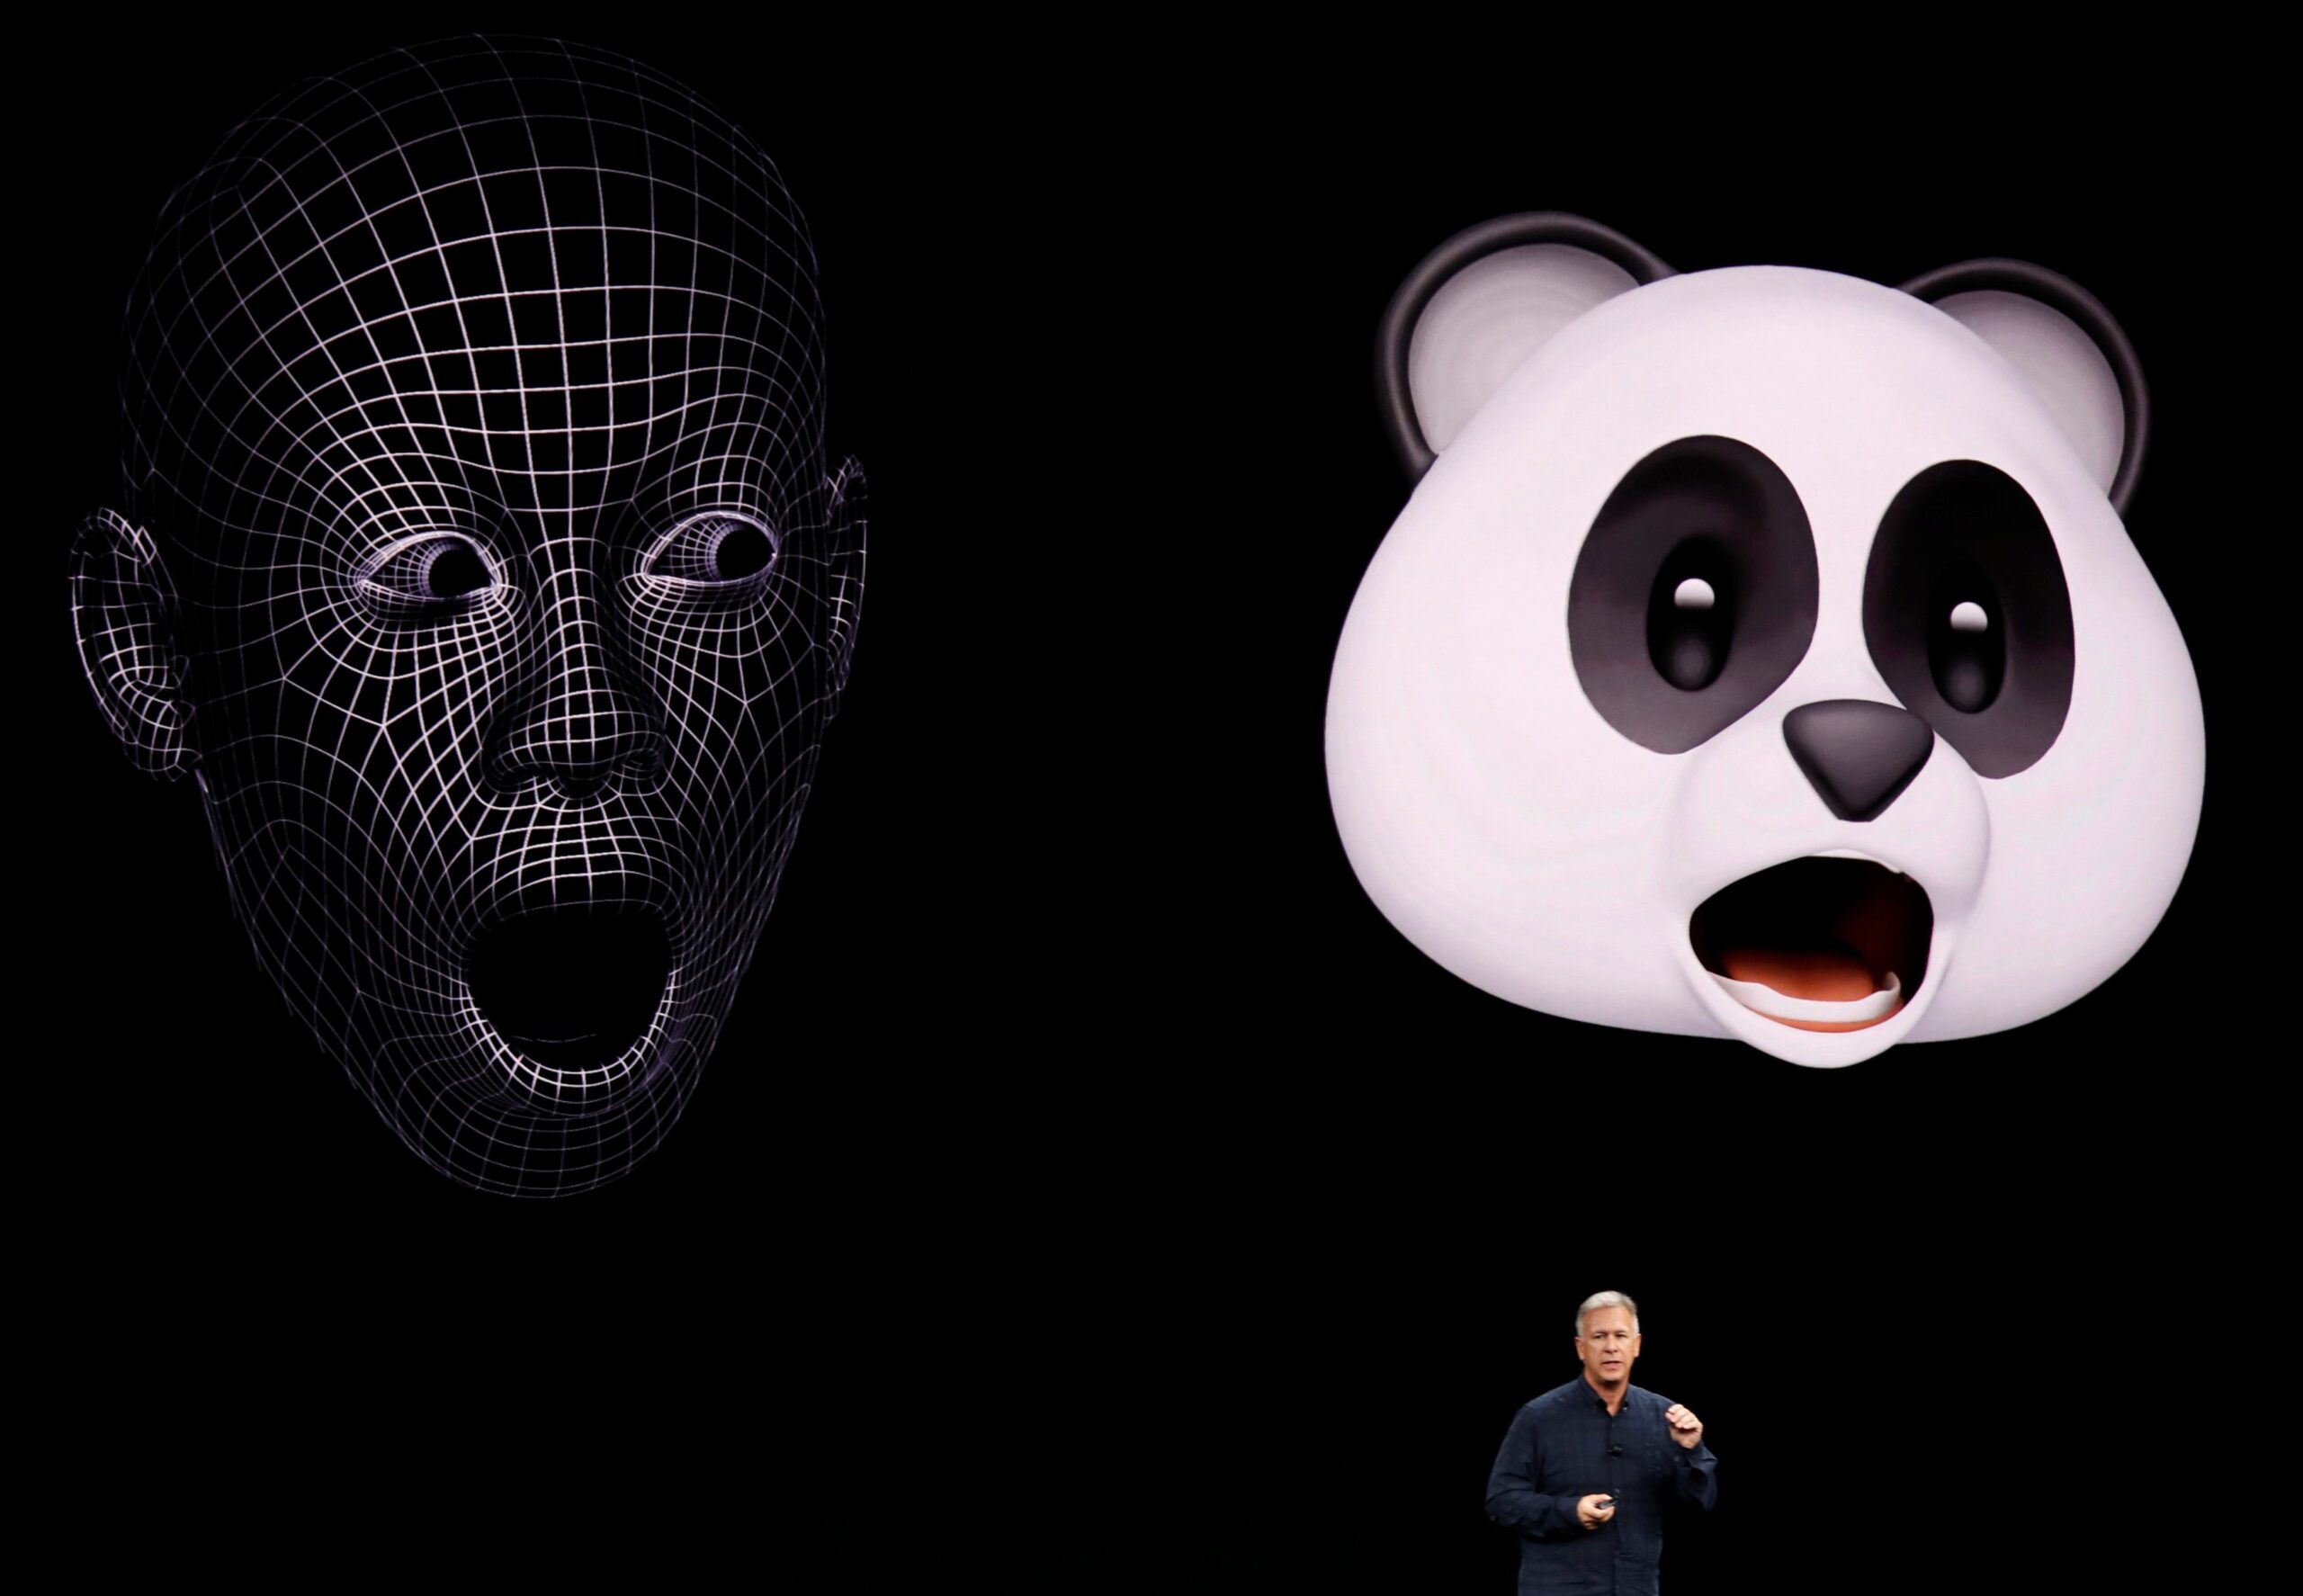 Apple Event Underscores Popularity of Emoji